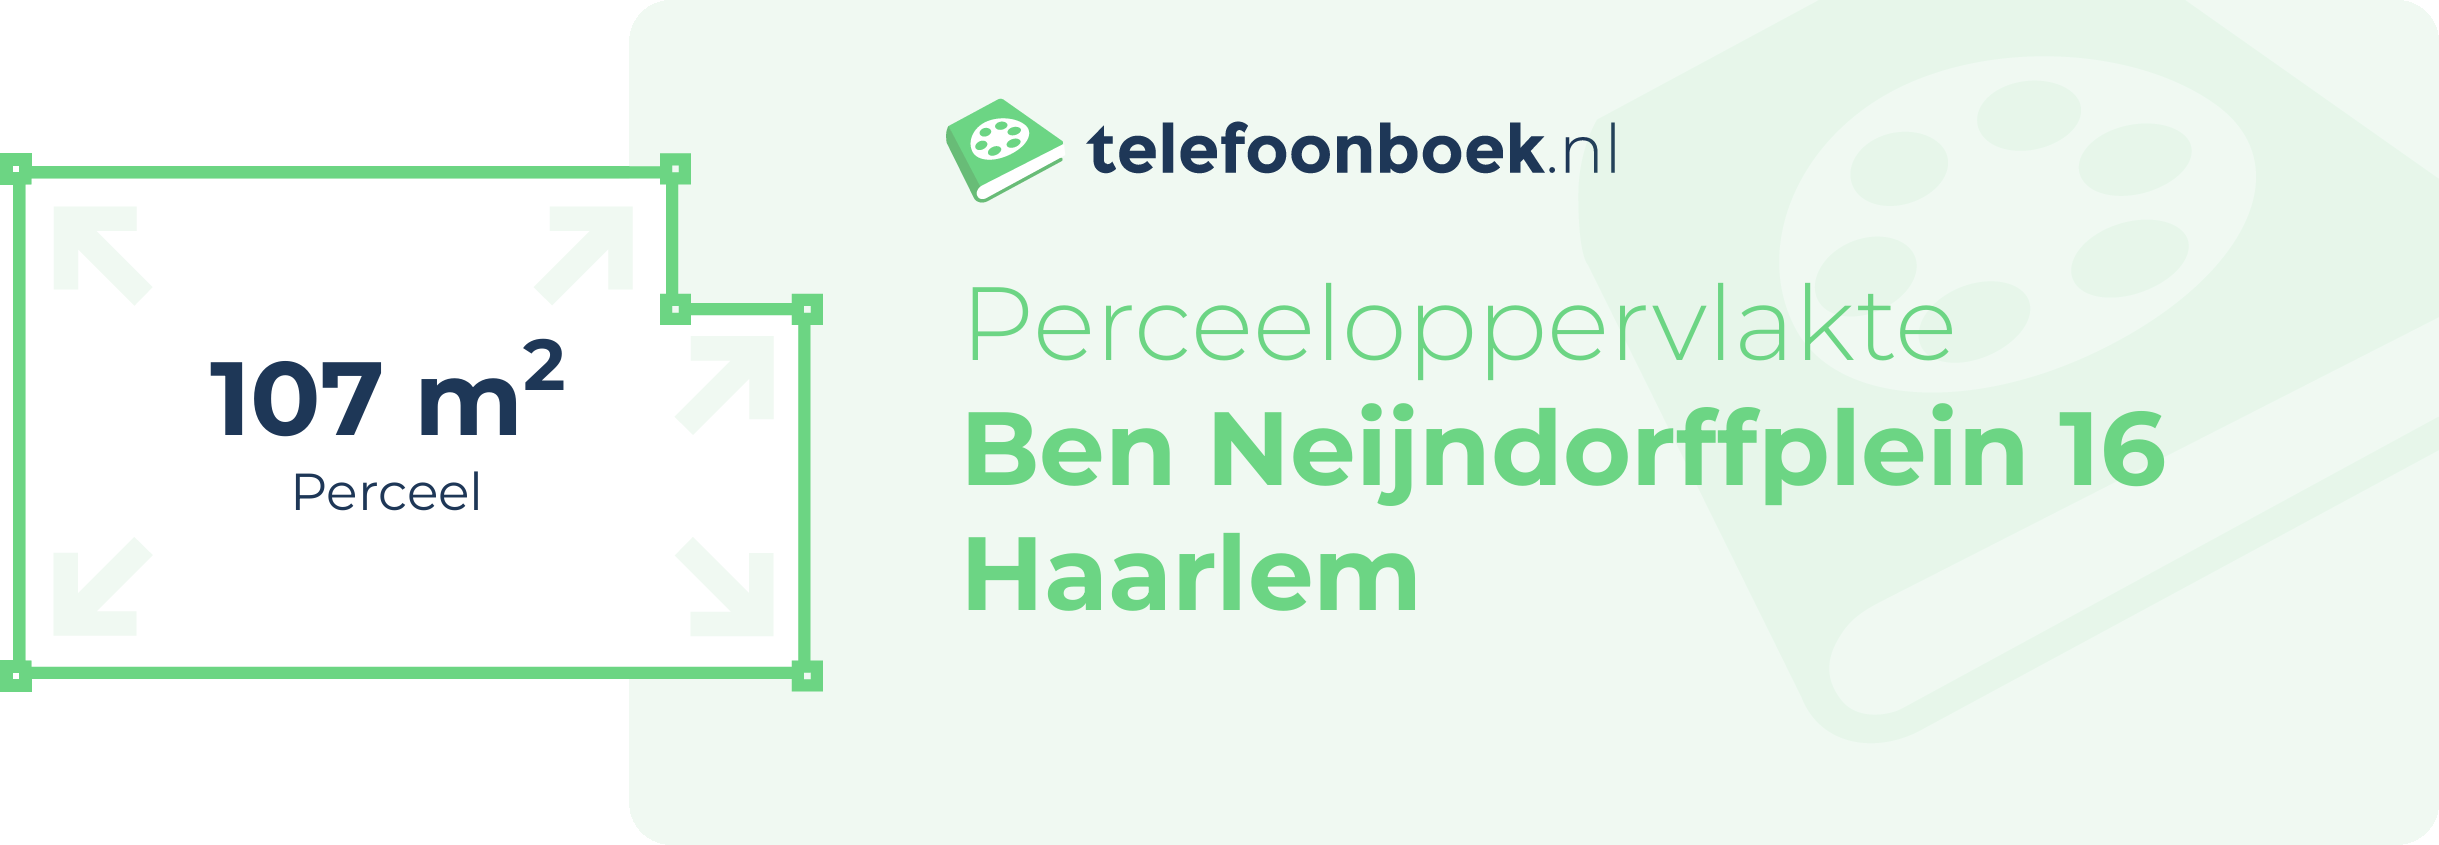 Perceeloppervlakte Ben Neijndorffplein 16 Haarlem